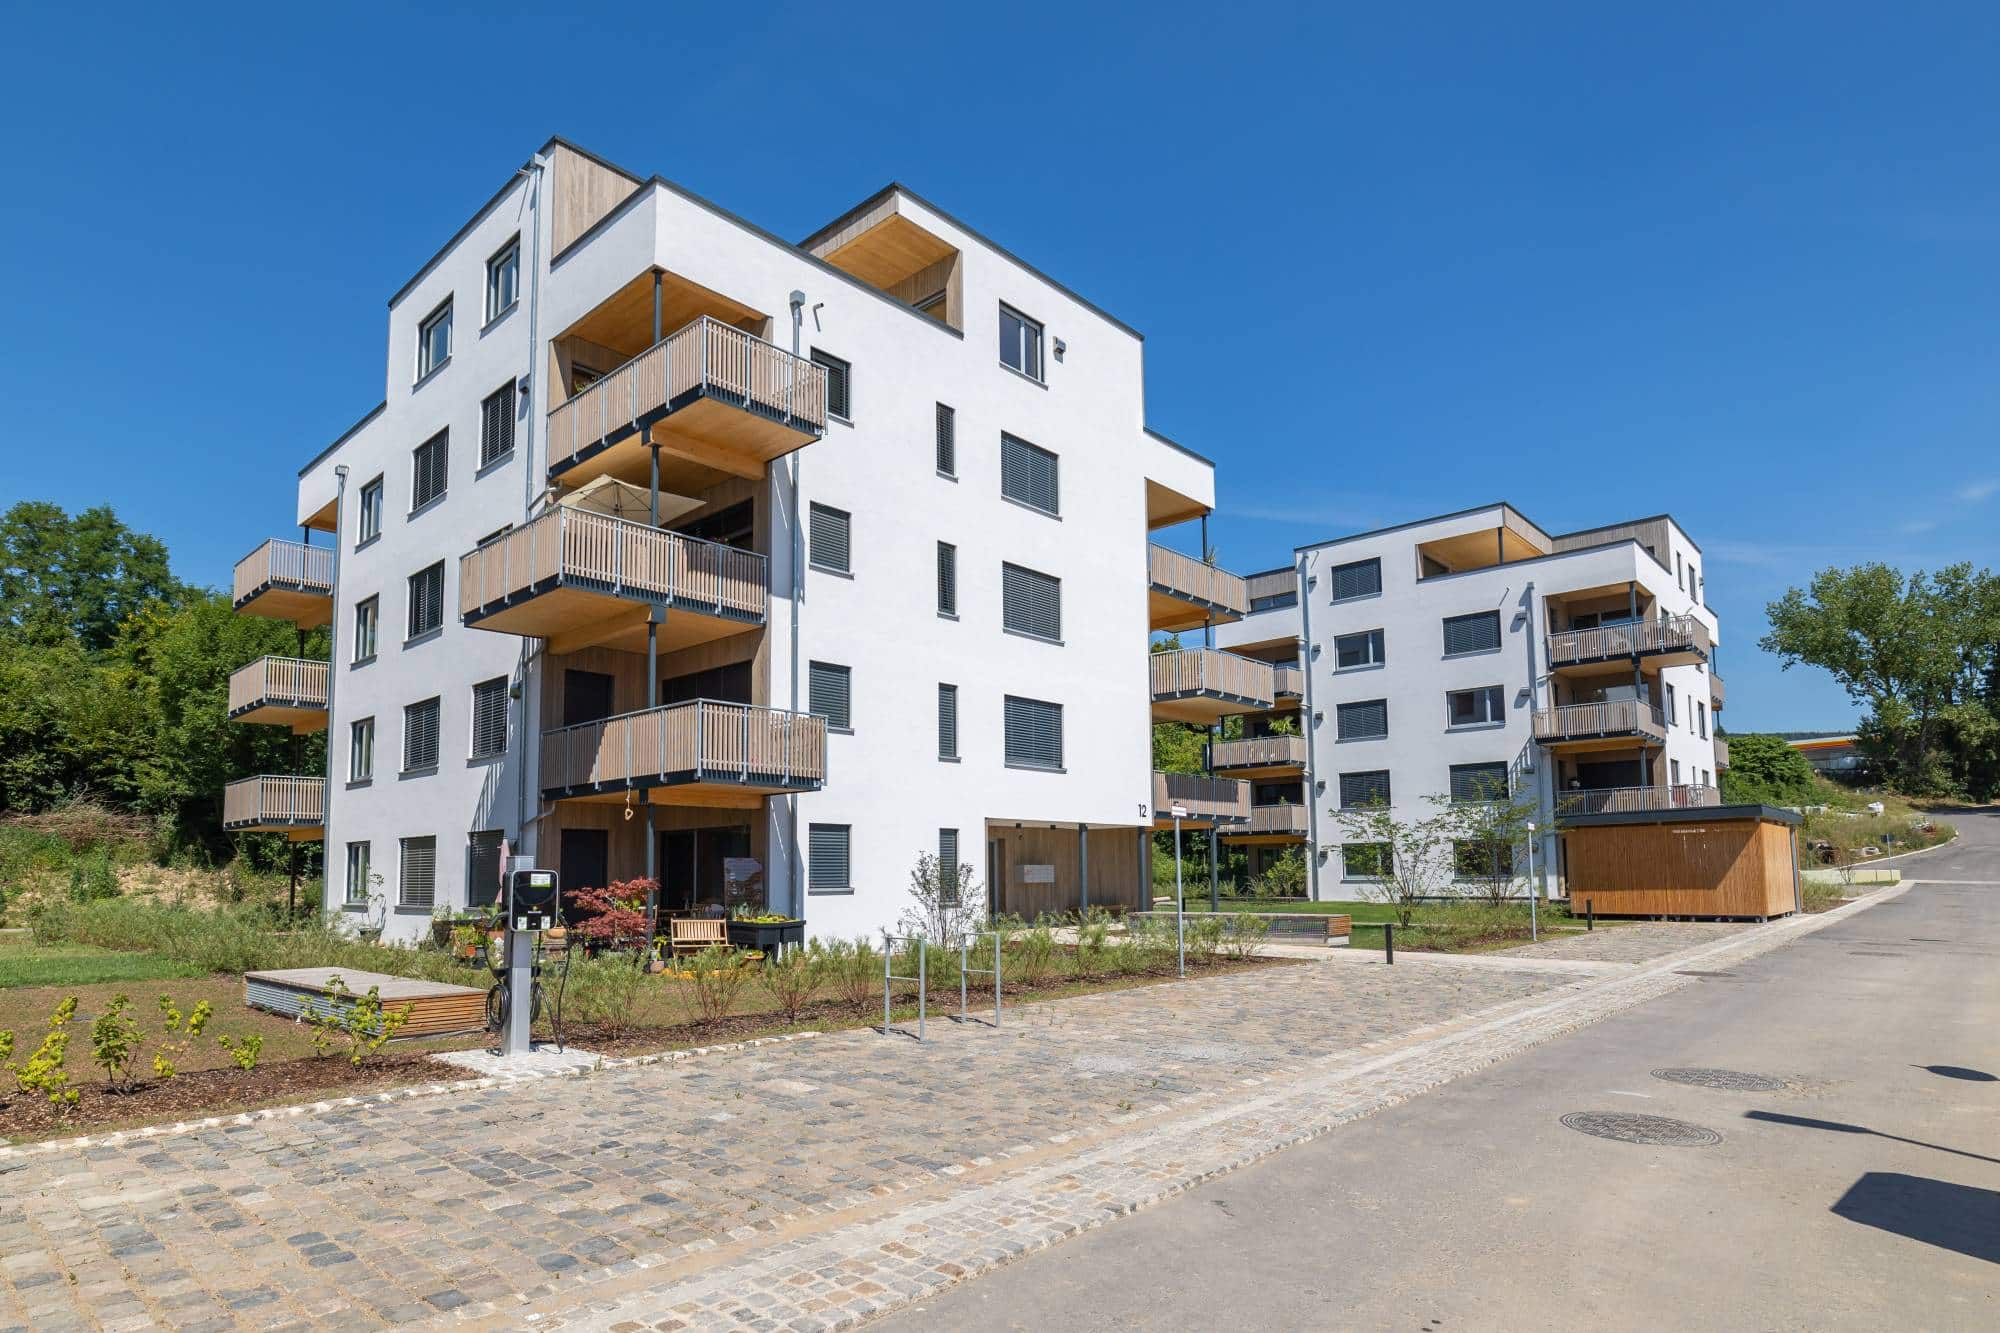 Projektvorstellung mit Gebäudebesichtigung: Wohnquartier „Am Kaltenbach“